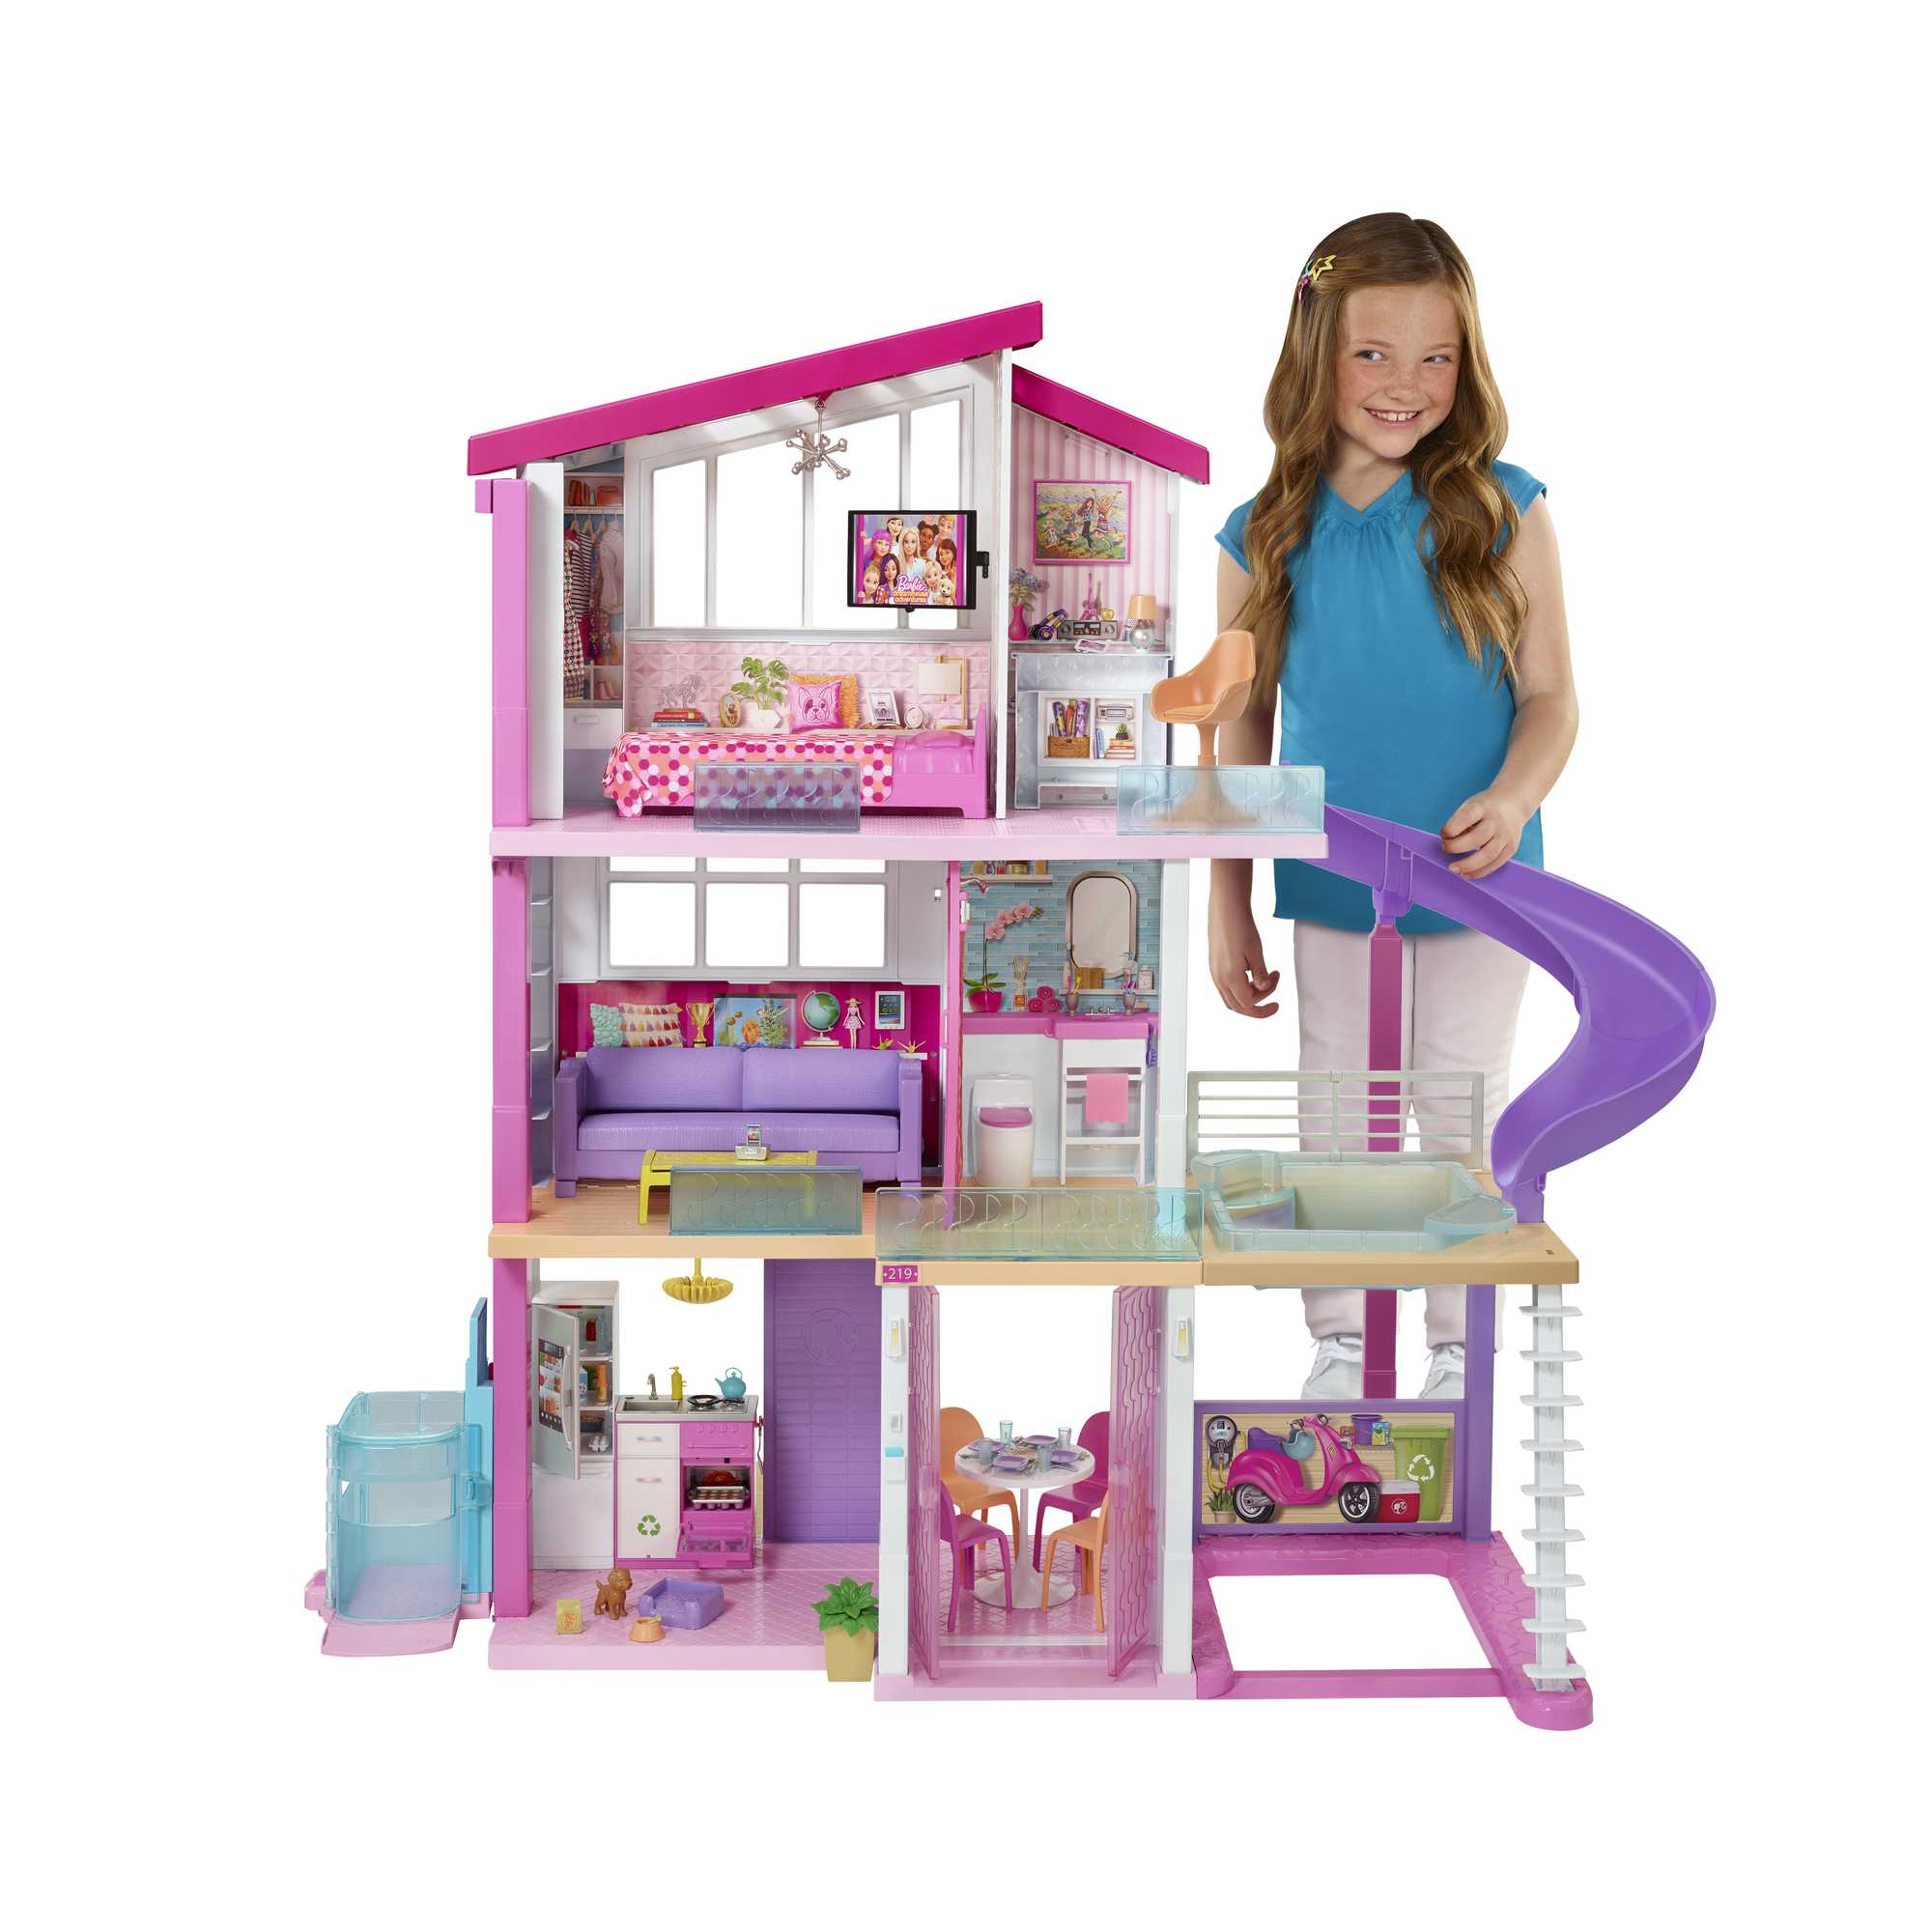 La cuisine de la maison de Barbie